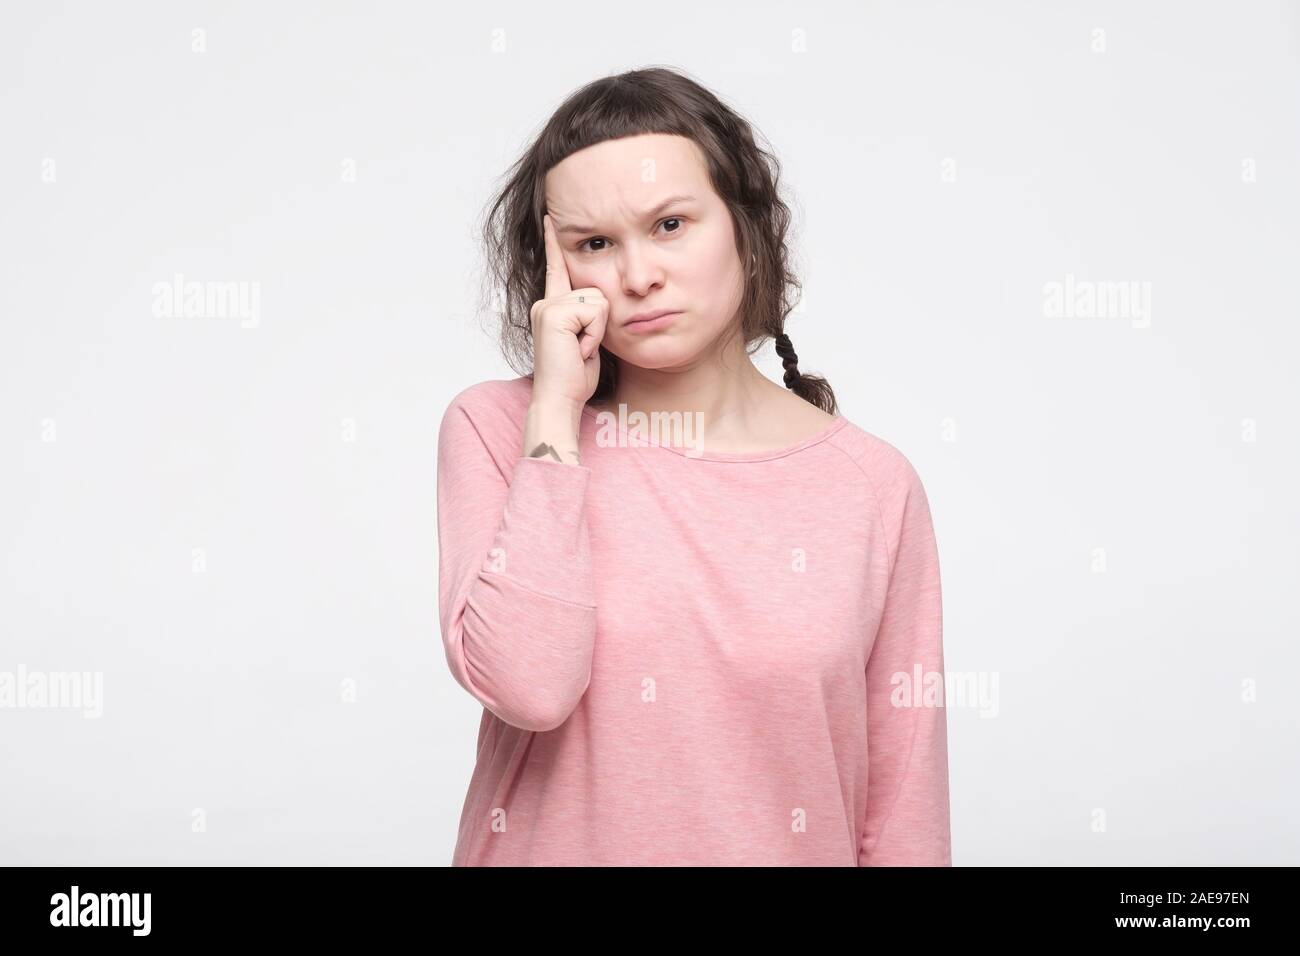 Nachdenklich konzentriert junge Frau in rosa Kleidung mit attraktiven Look versucht, etwas daran zu erinnern. Studio shot Stockfoto